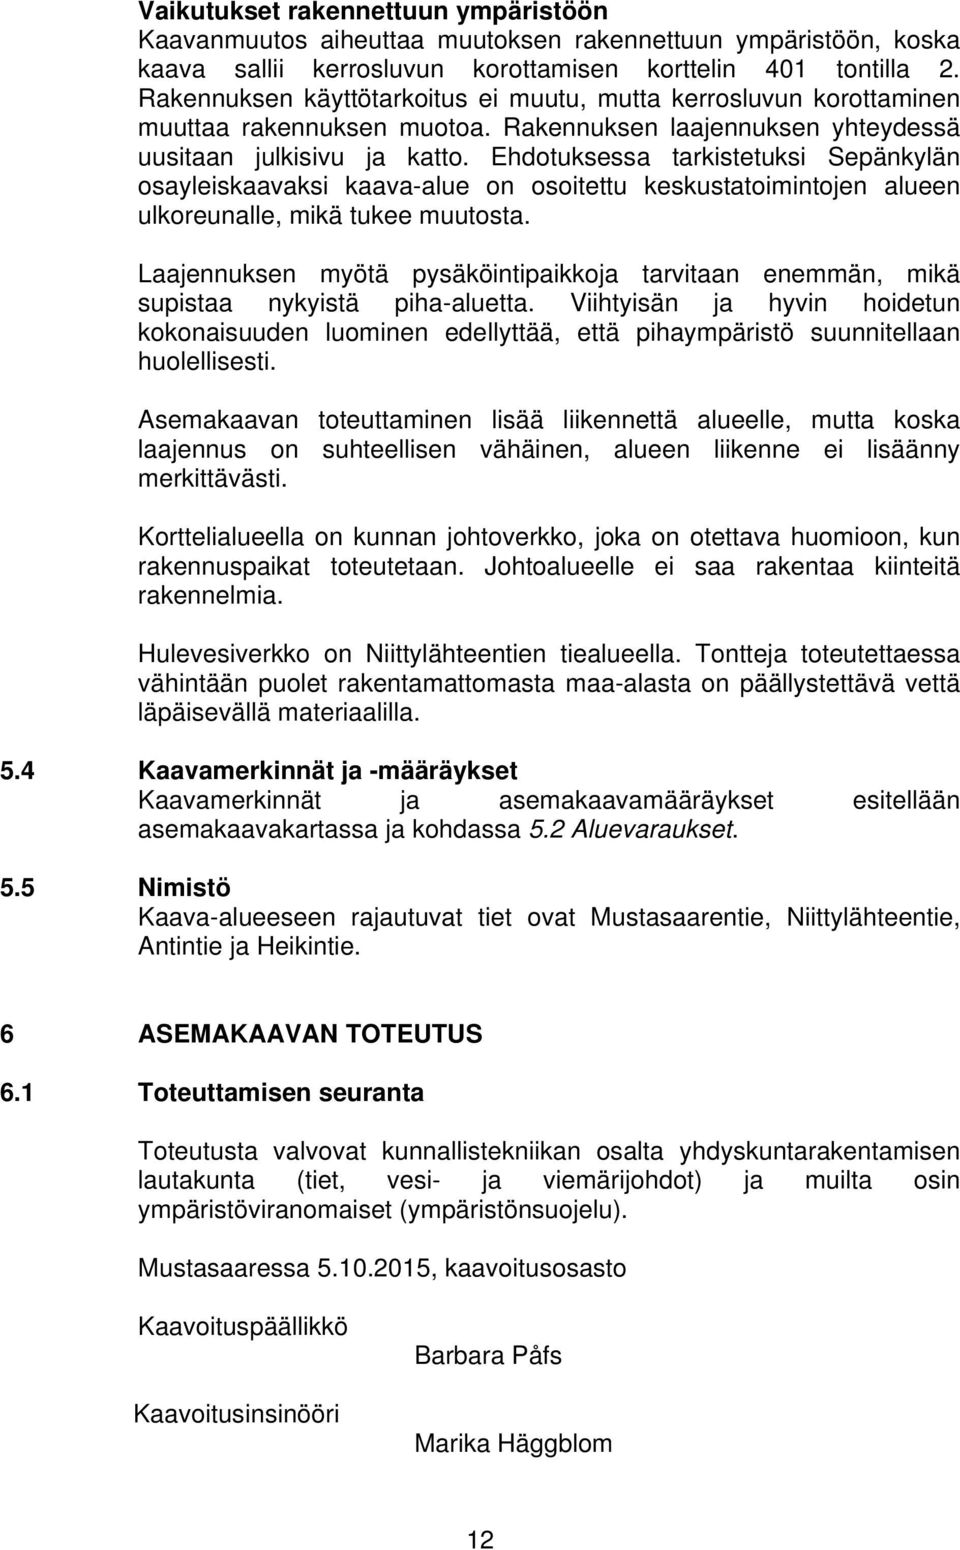 Ehdotuksessa tarkistetuksi Sepänkylän osayleiskaavaksi kaava-alue on osoitettu keskustatoimintojen alueen ulkoreunalle, mikä tukee muutosta.